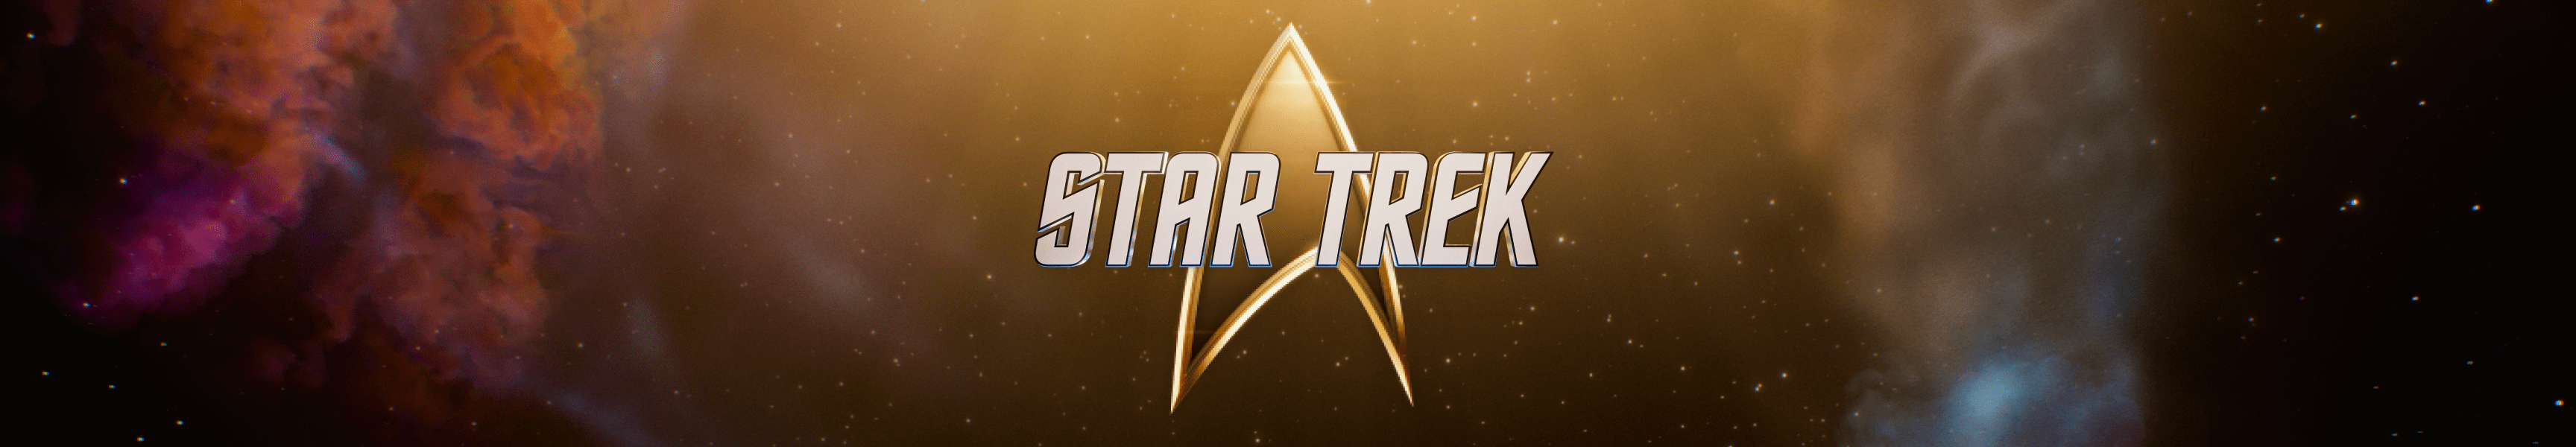 Star Trek Ships Of The Line